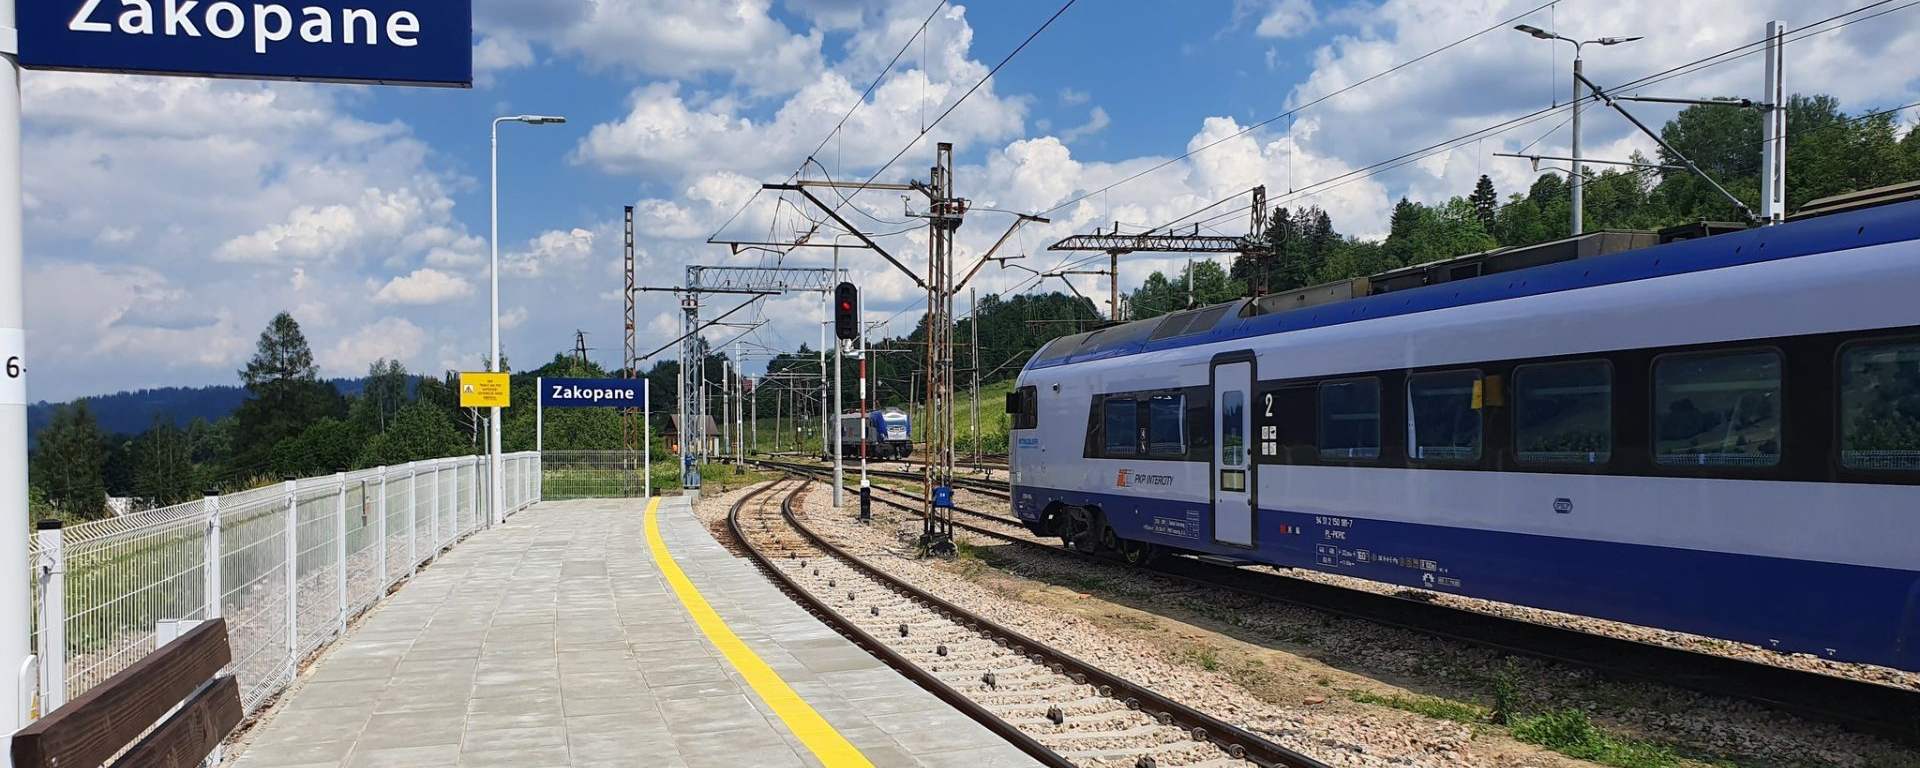 Pociąg na trasie Kraków-Zakopane